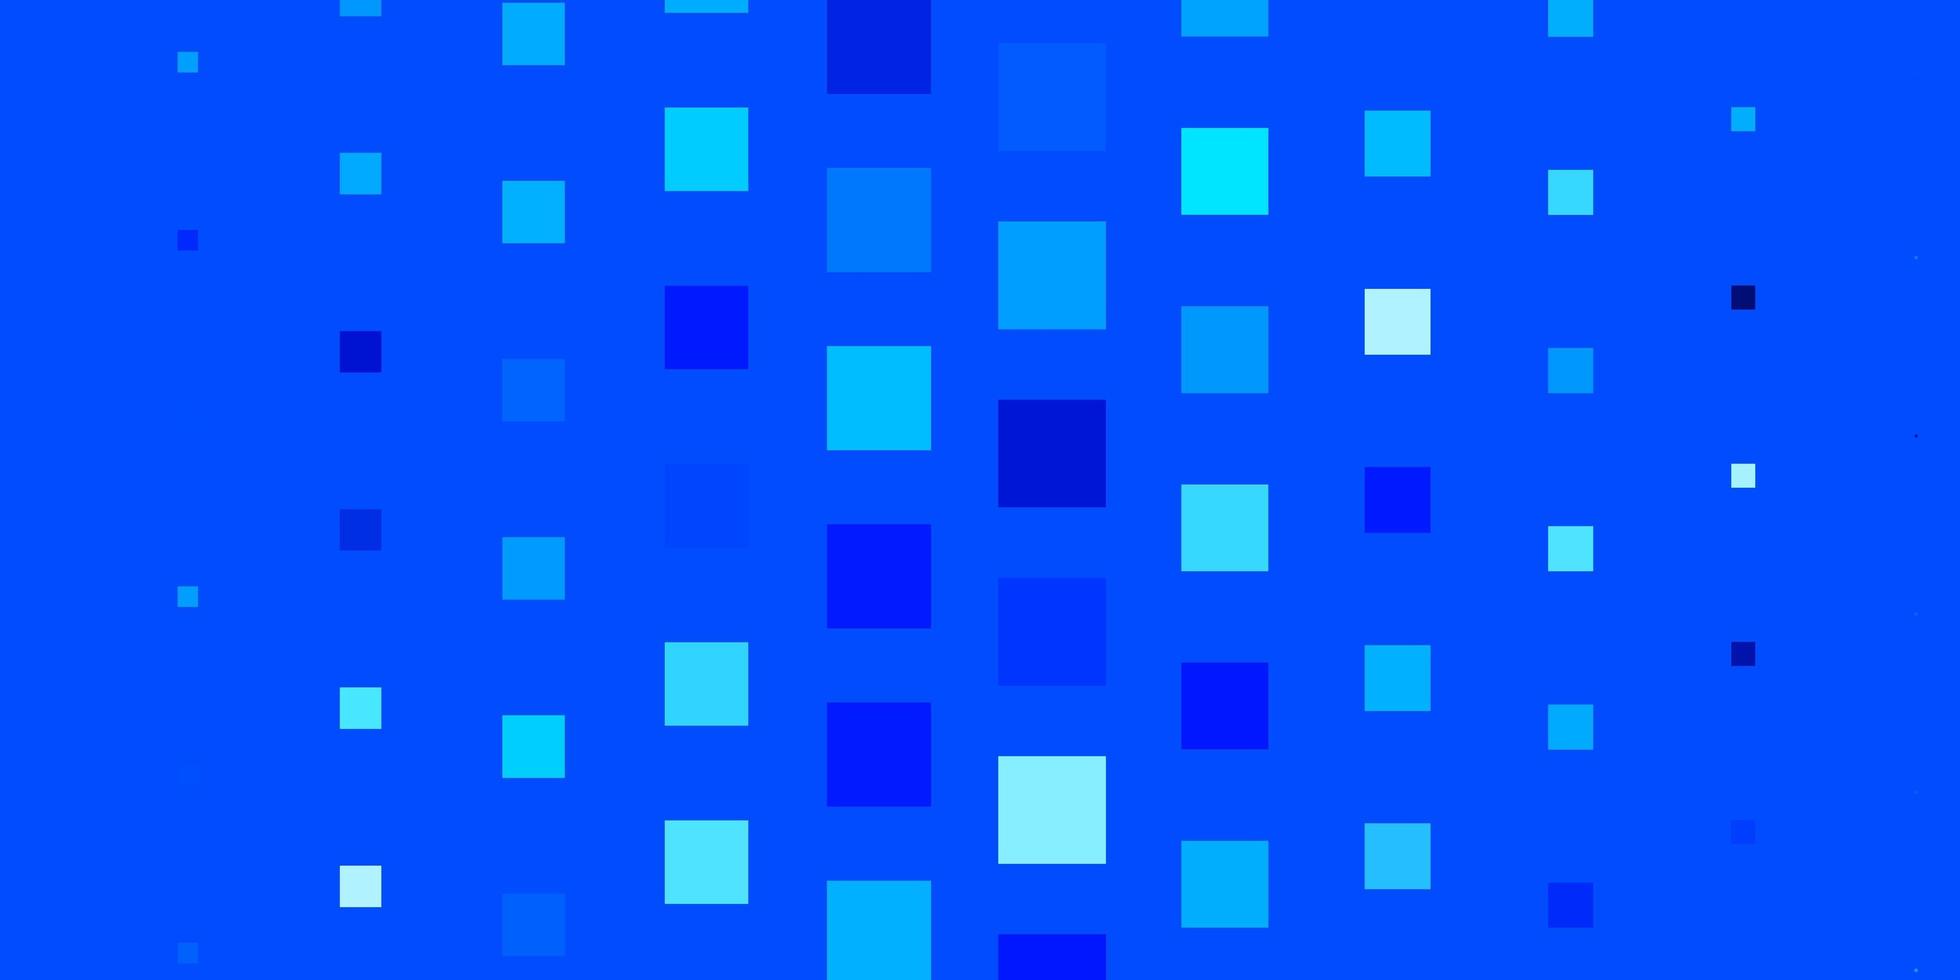 textura de vector azul claro en estilo rectangular